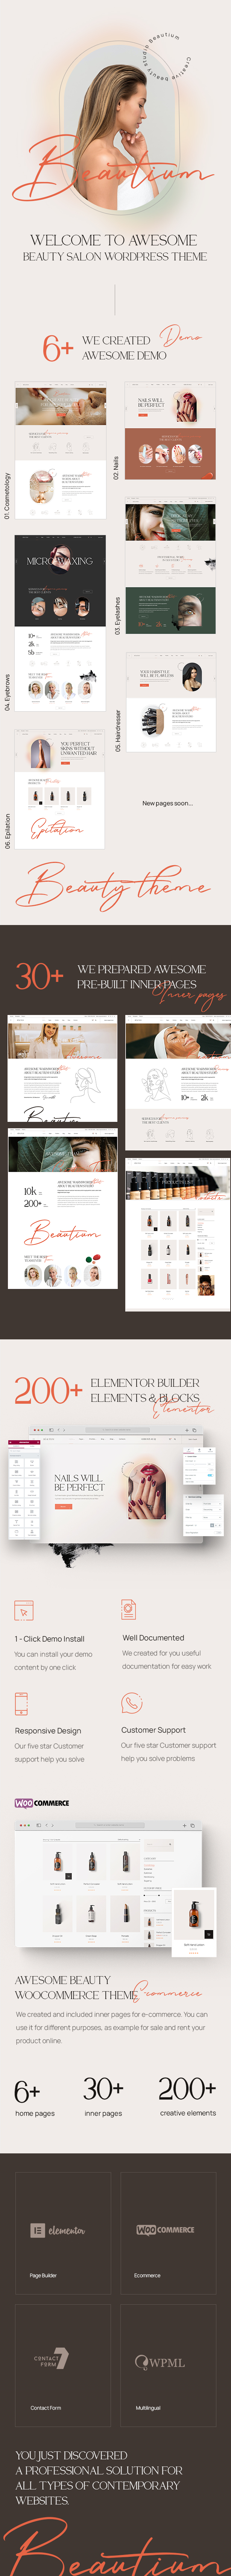 Beautium | Beauty Salon & Nails WordPress Theme - 1